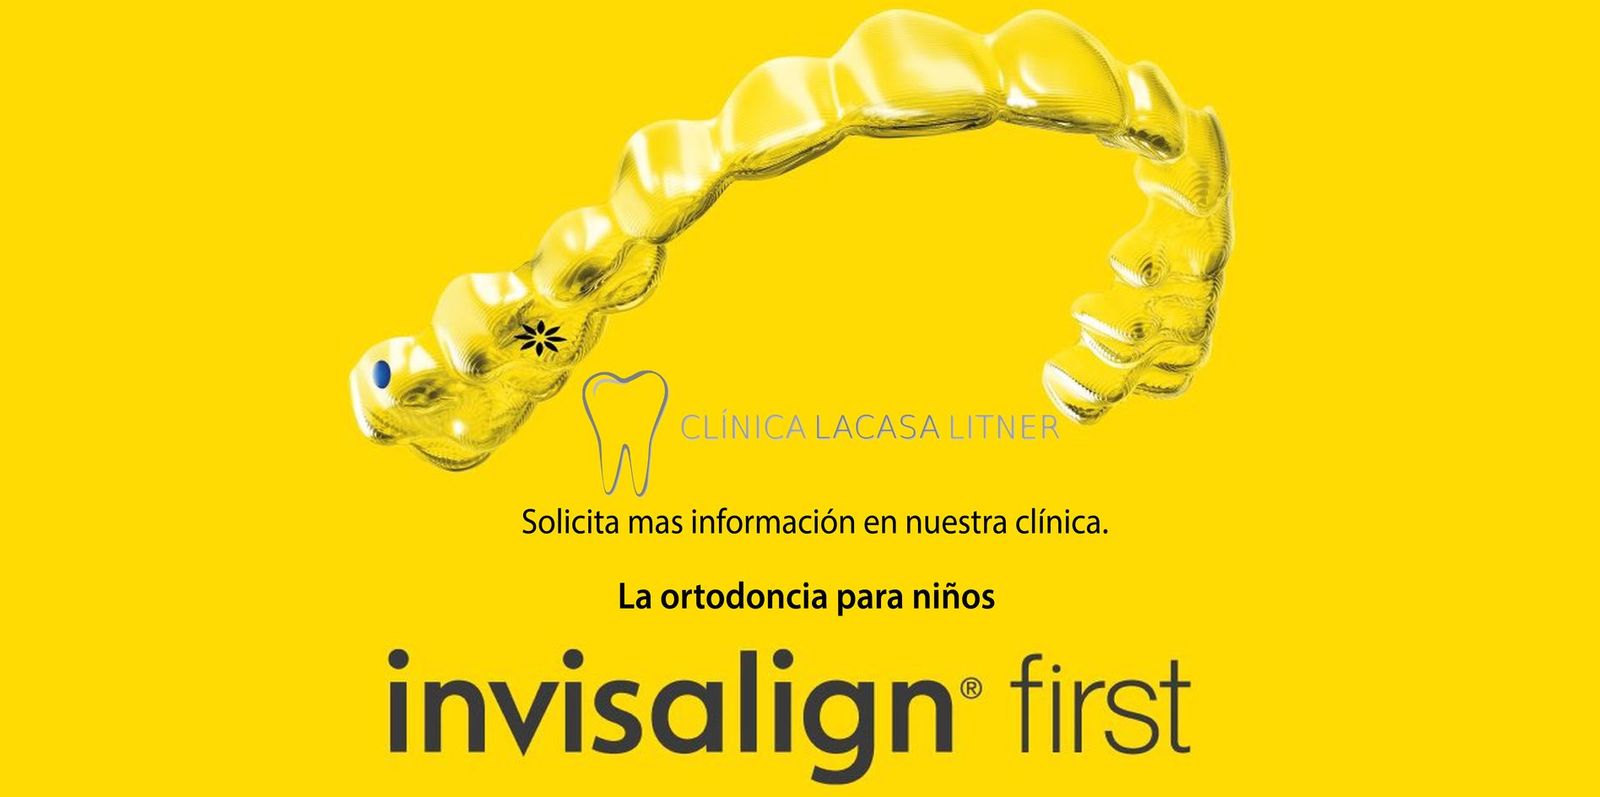 Invisalign First®, la ortodoncia para niños, desde el 1 de julio en nuestra clínica